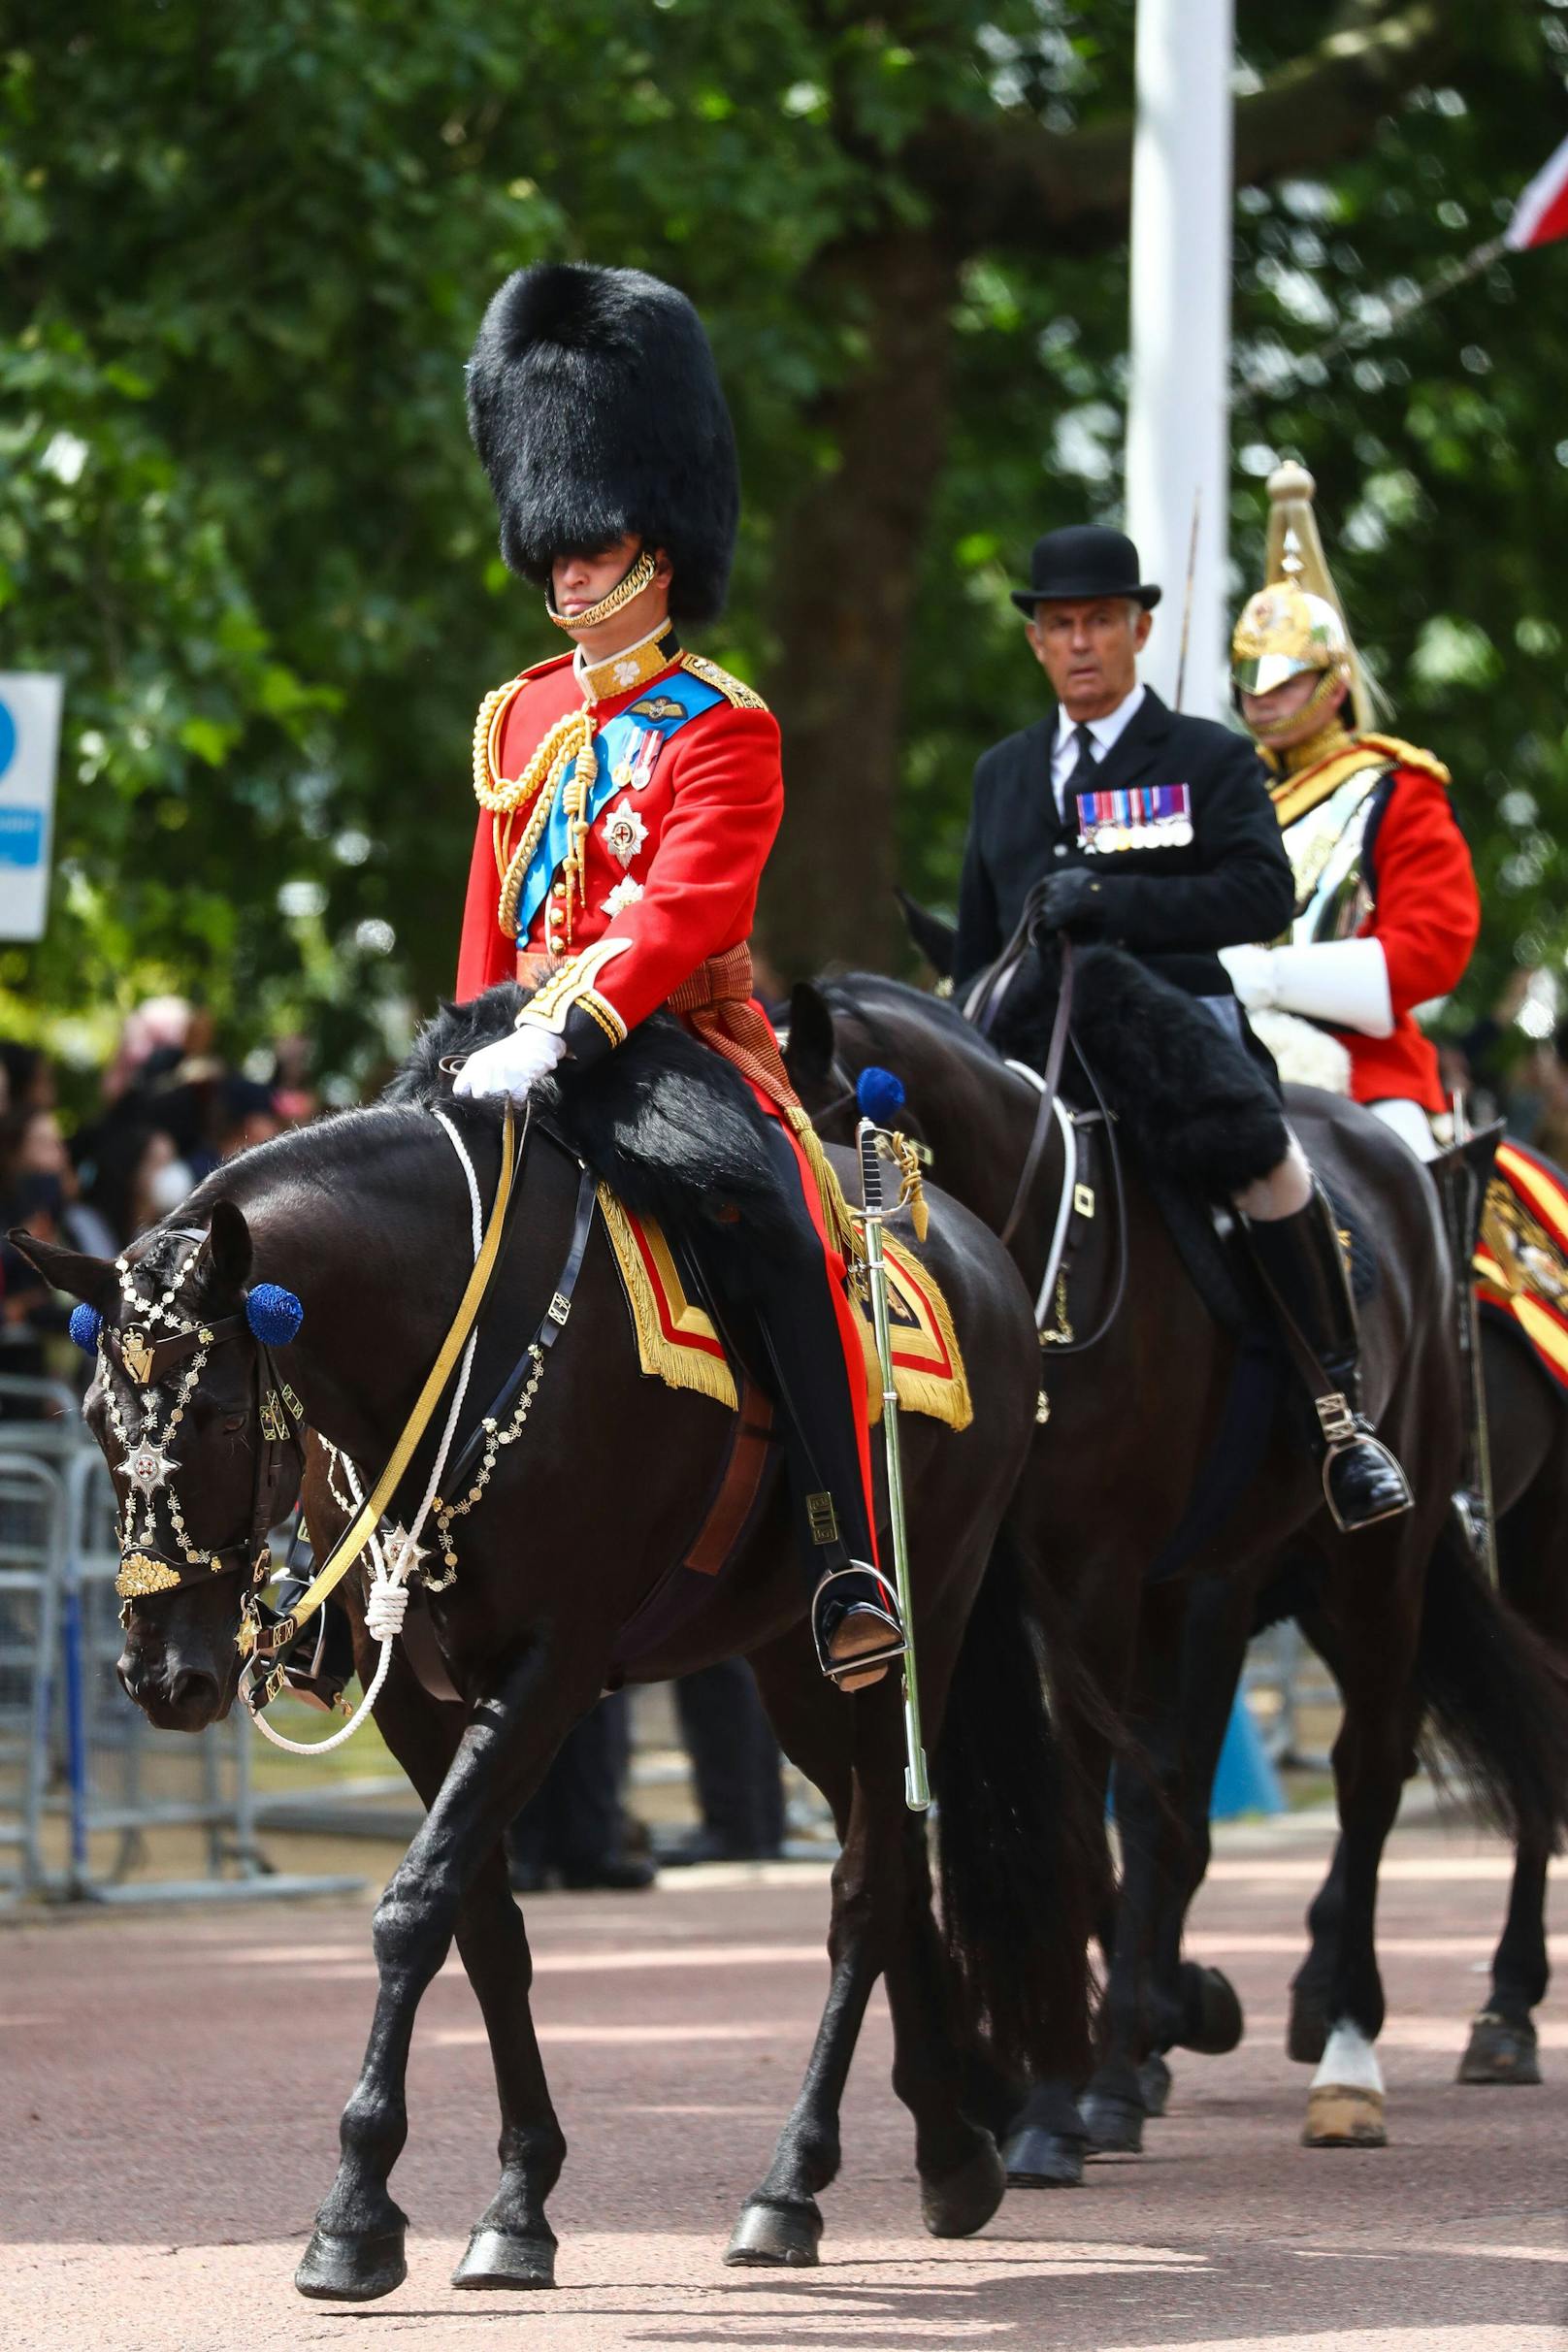 Der britische Prinz auf seinem Pferd bei den Proben für die Geburtstagsparade am 2. Juni.